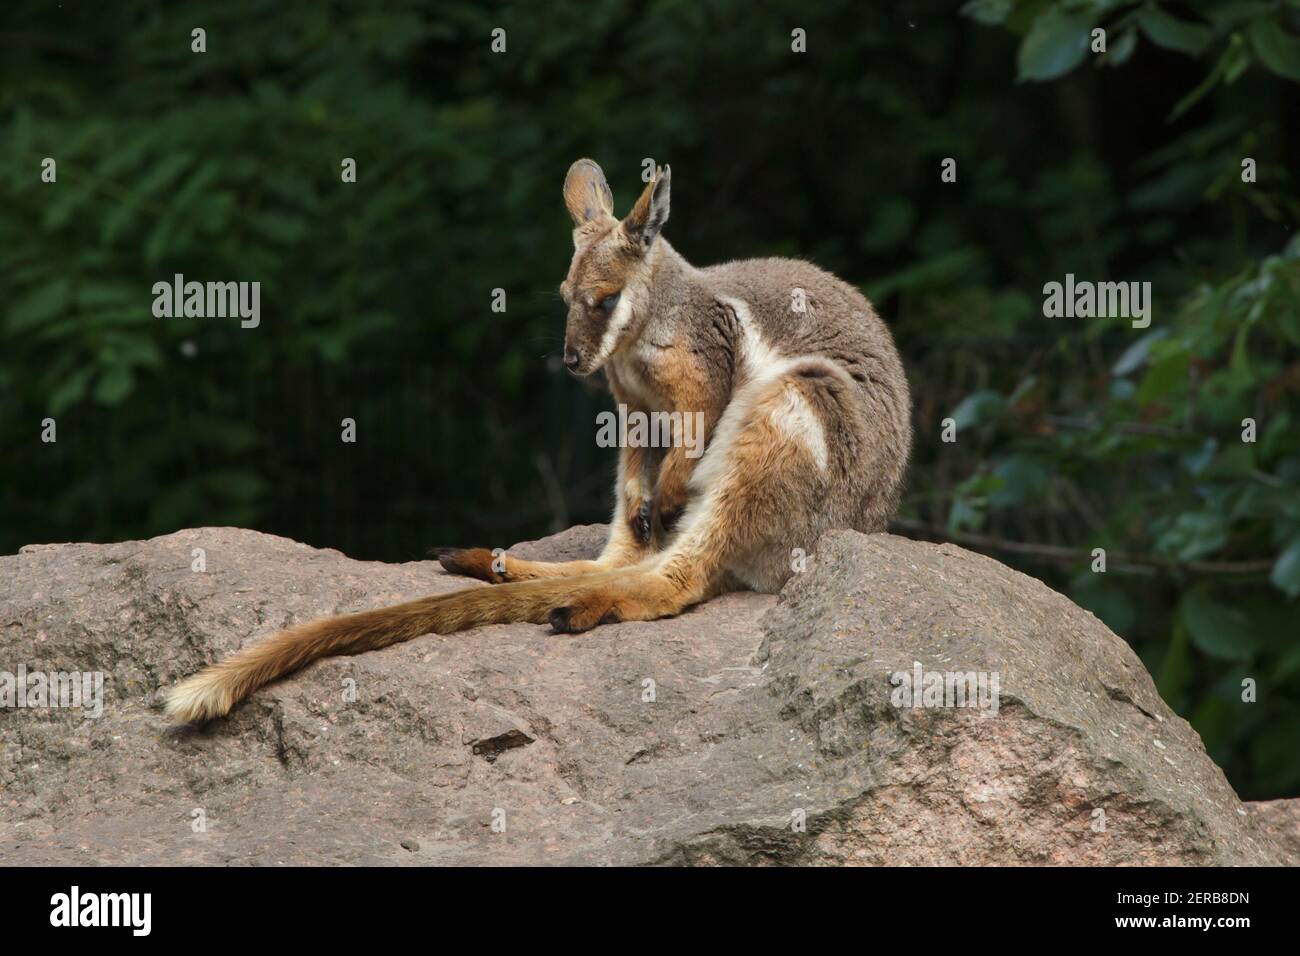 Wallaby de patas amarillas (Petrogale xanthopus xanthopus). Foto de stock